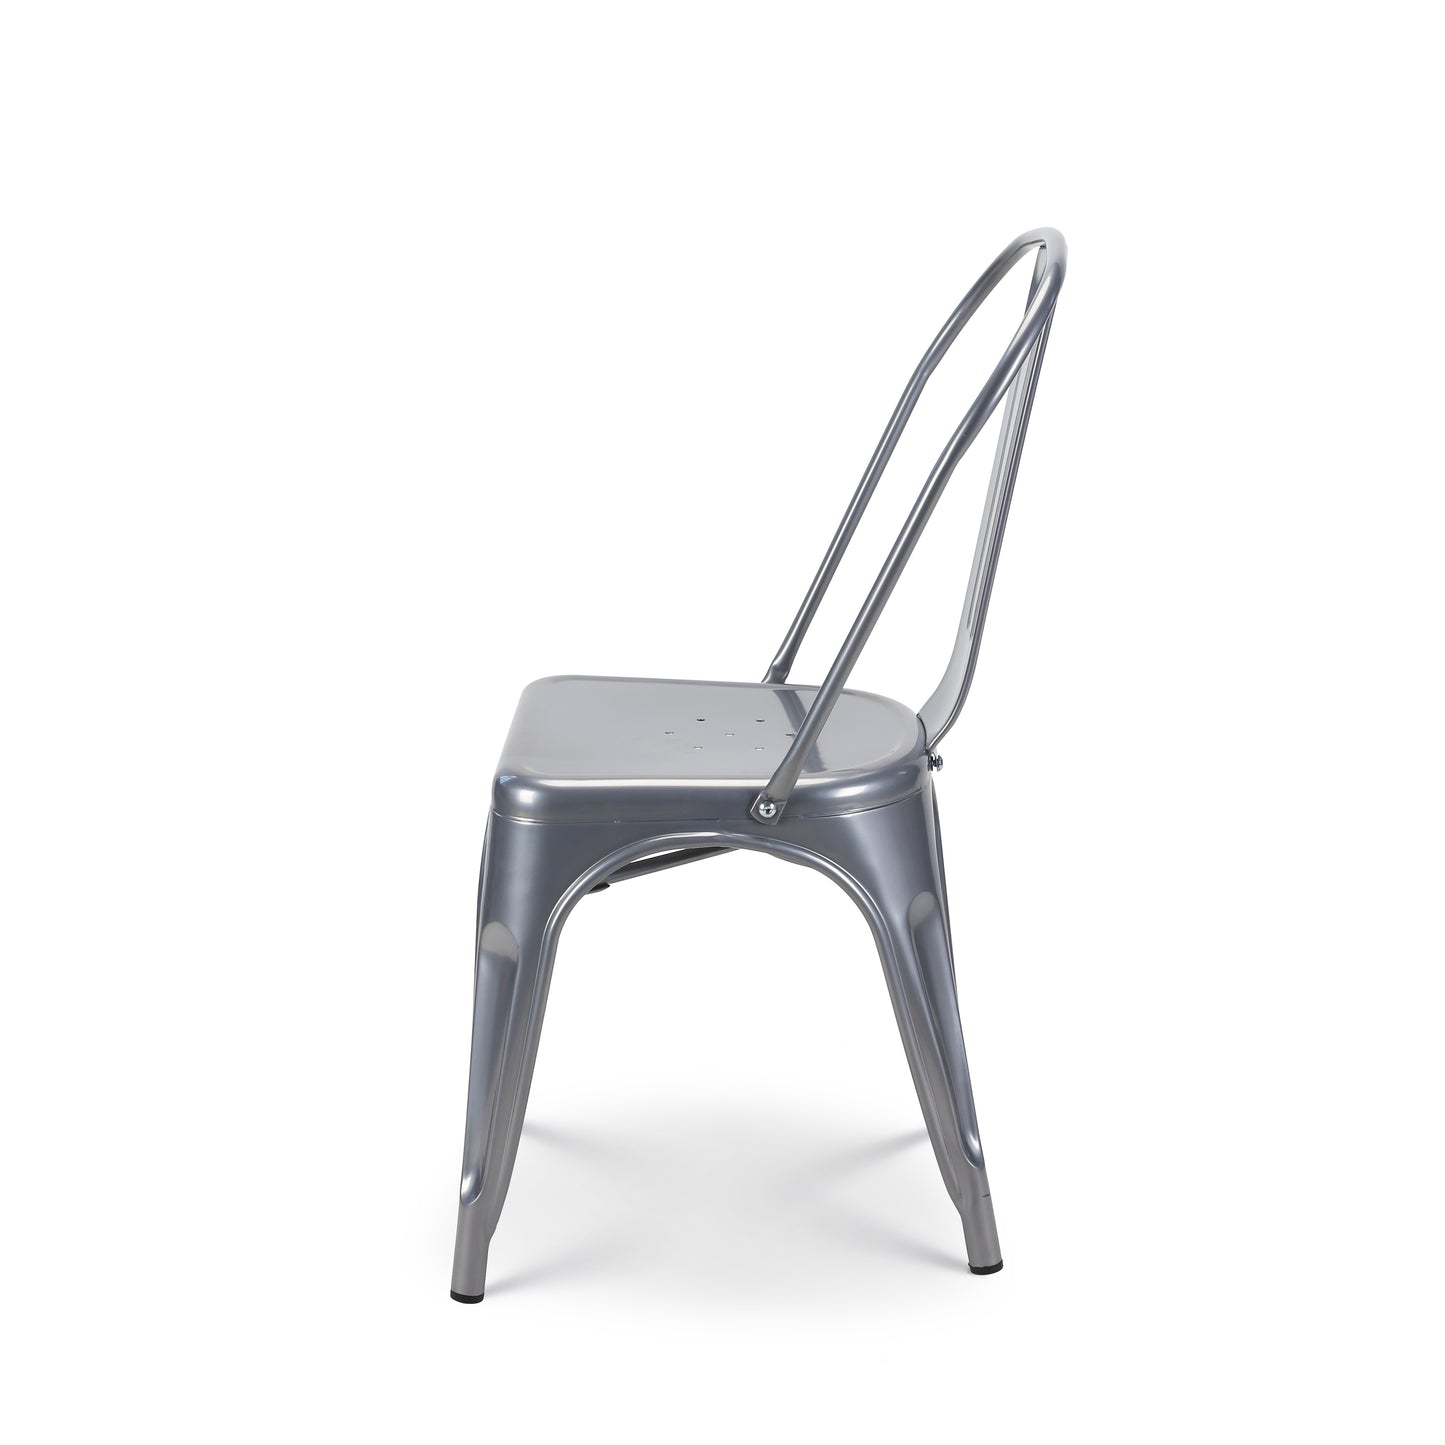 Chaise en métal gris style industriel - Finition brillant